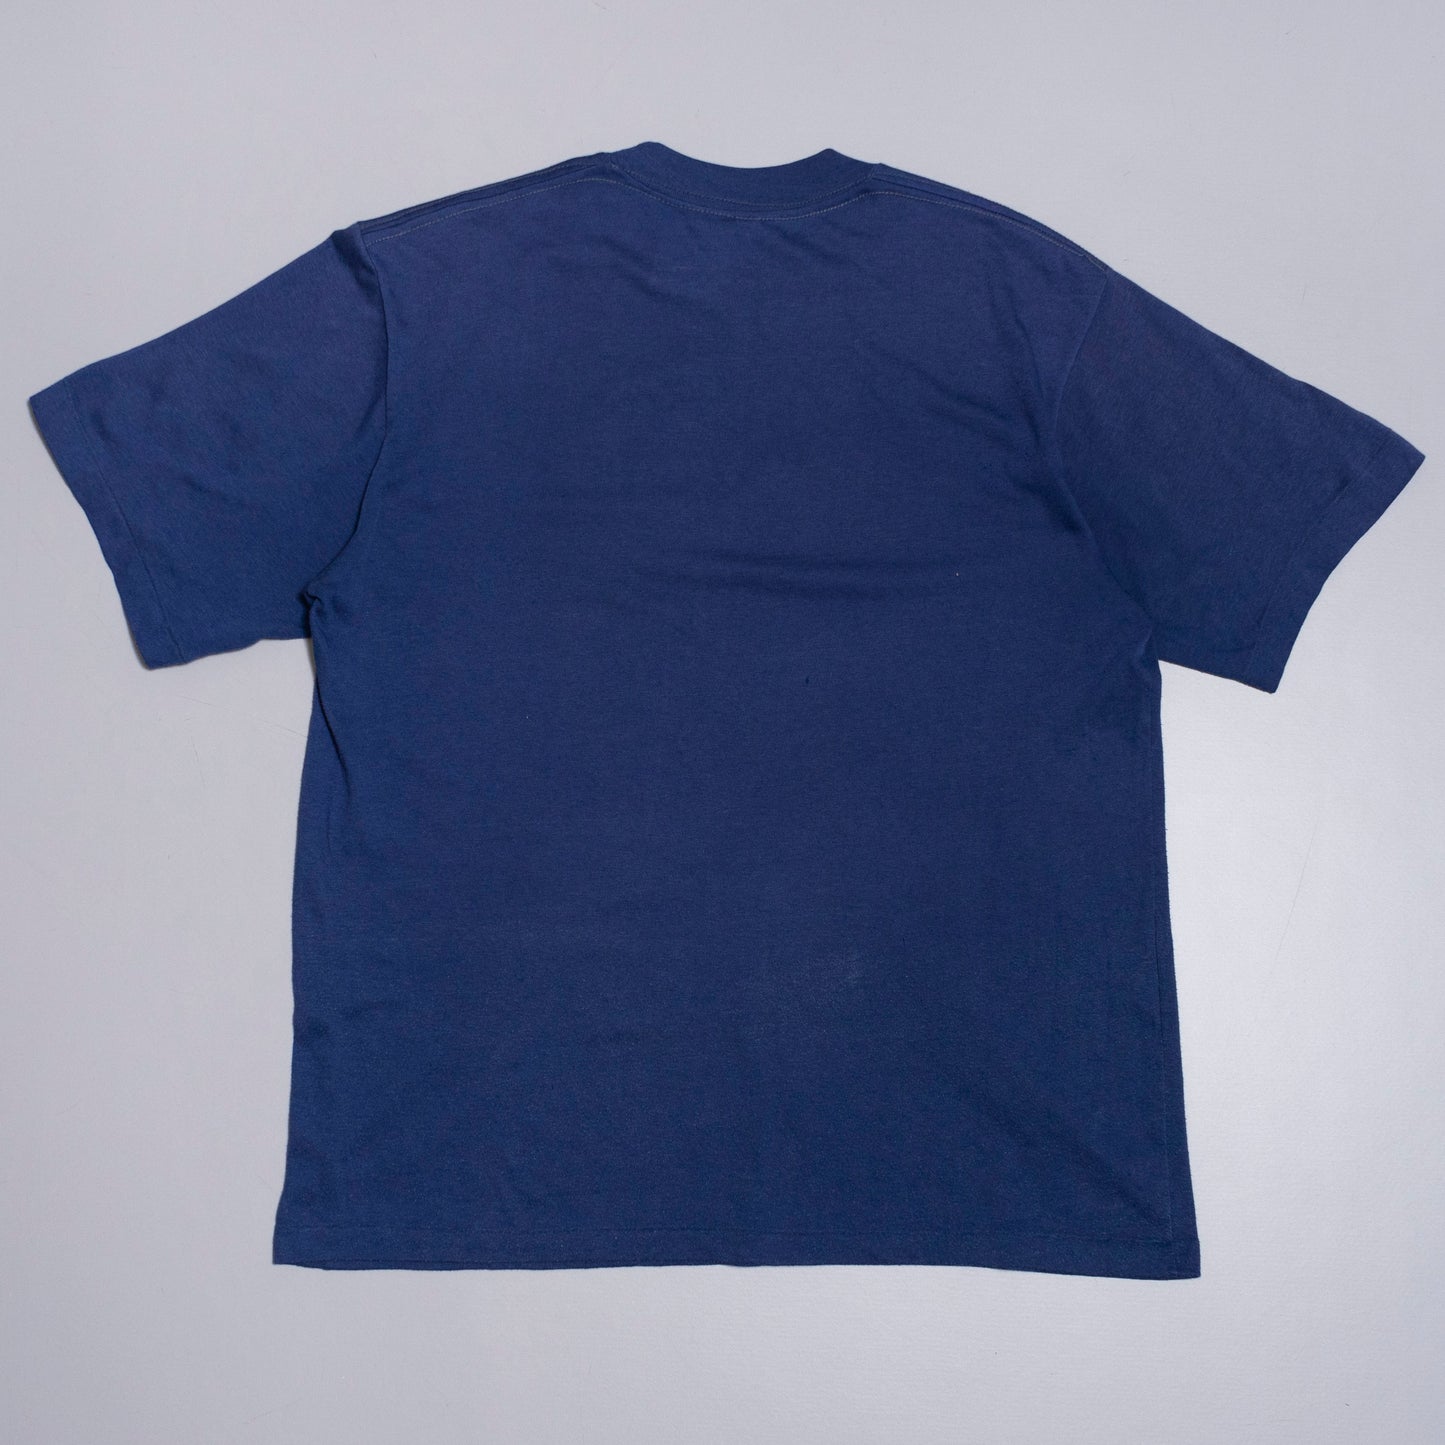 Isla Floreana Galapagos T Shirt, XL